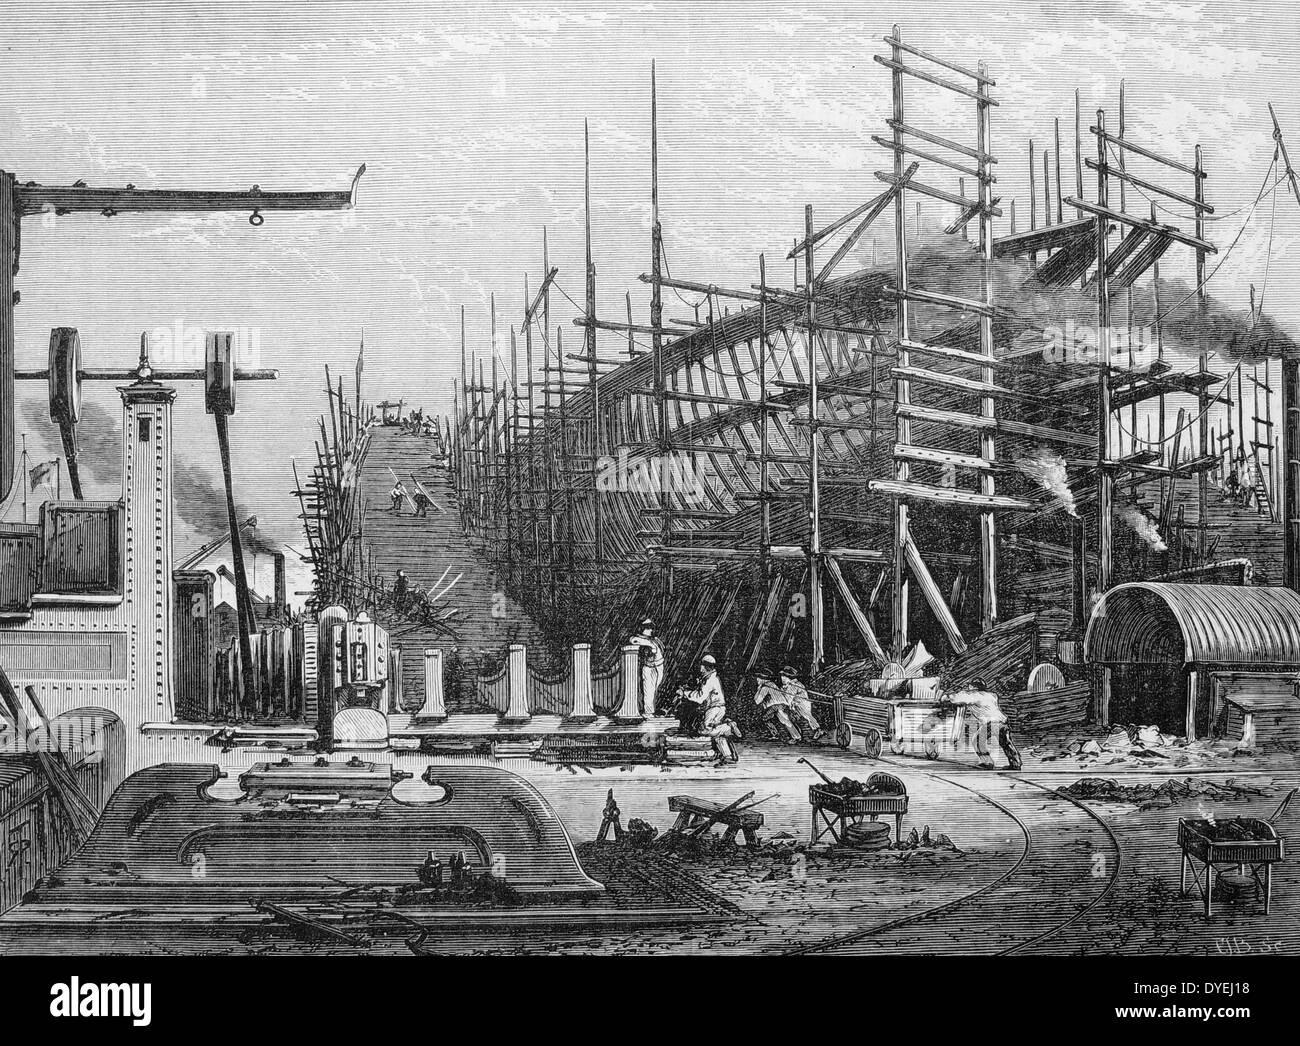 Le cadre d'un navire en fer sur les stocks au chantier naval du Samuda, coudée, Isle of Dogs, Londres. La gravure, Londres, 1880 Banque D'Images